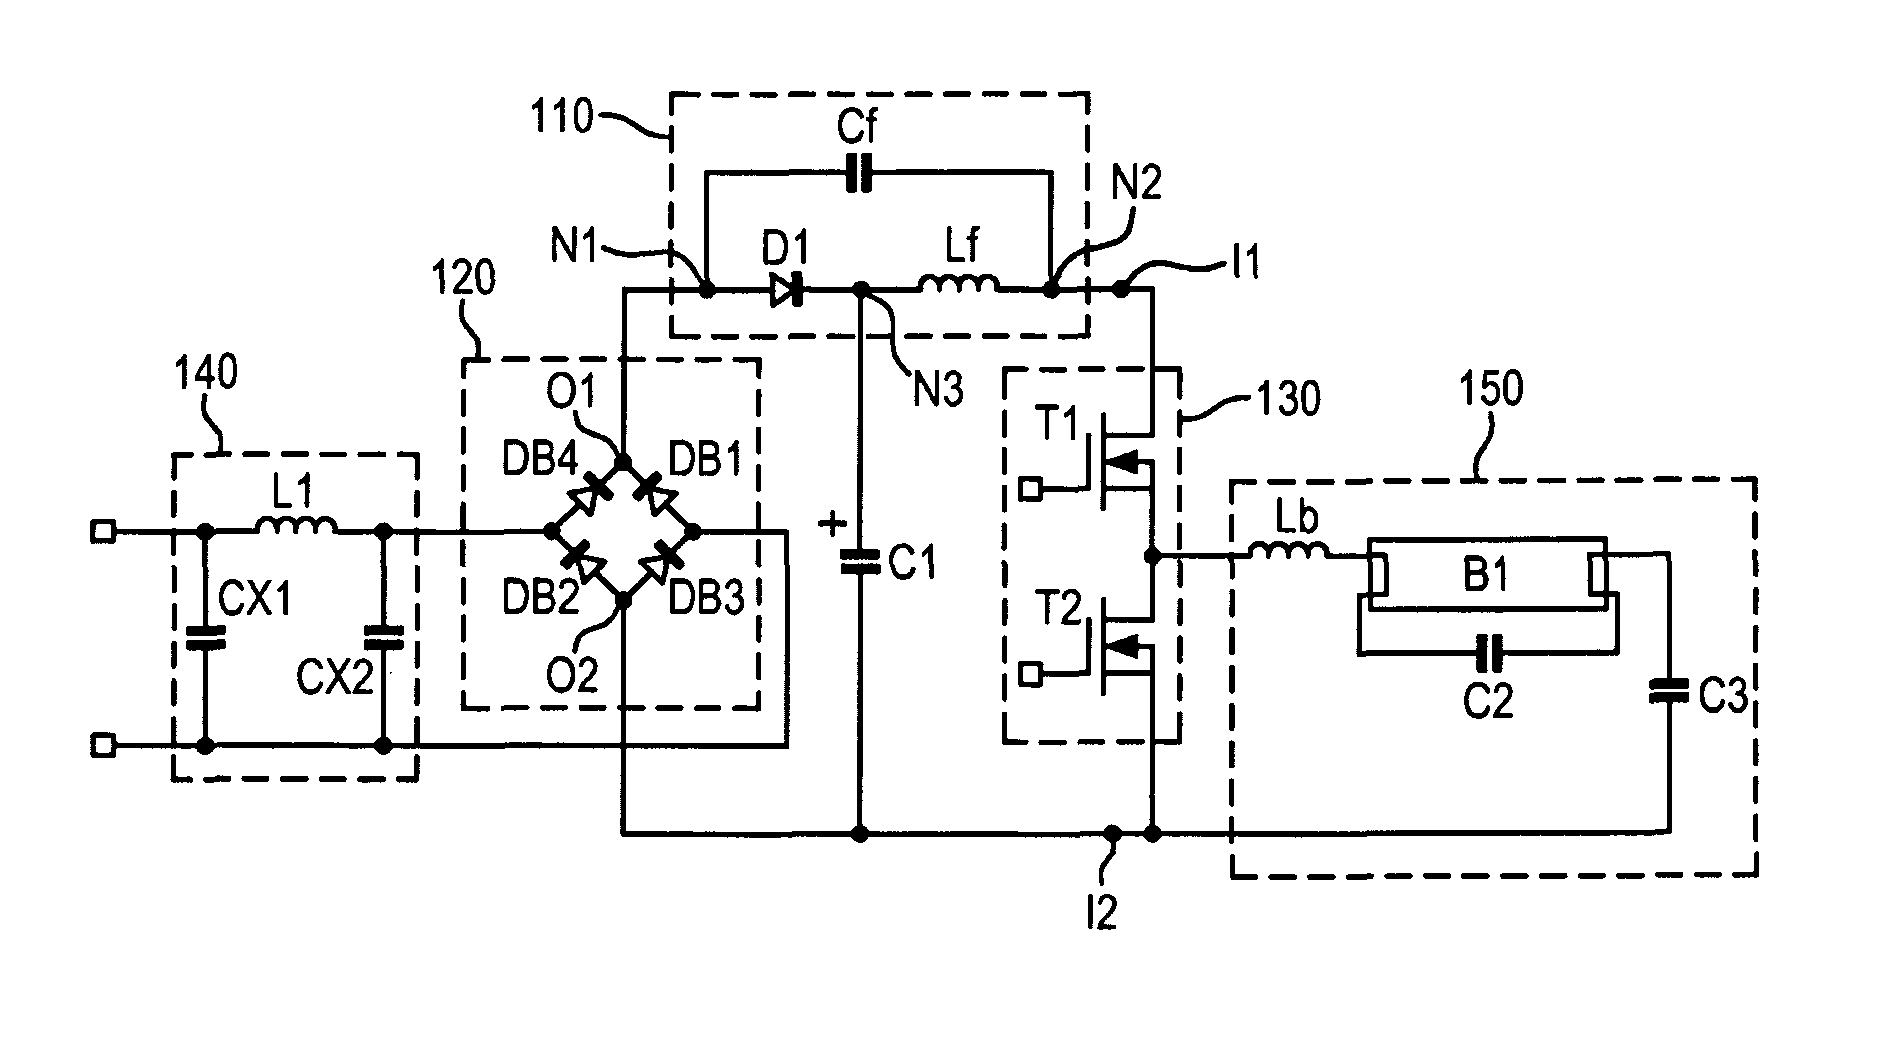 Power factor correction circuit of an electronic ballast